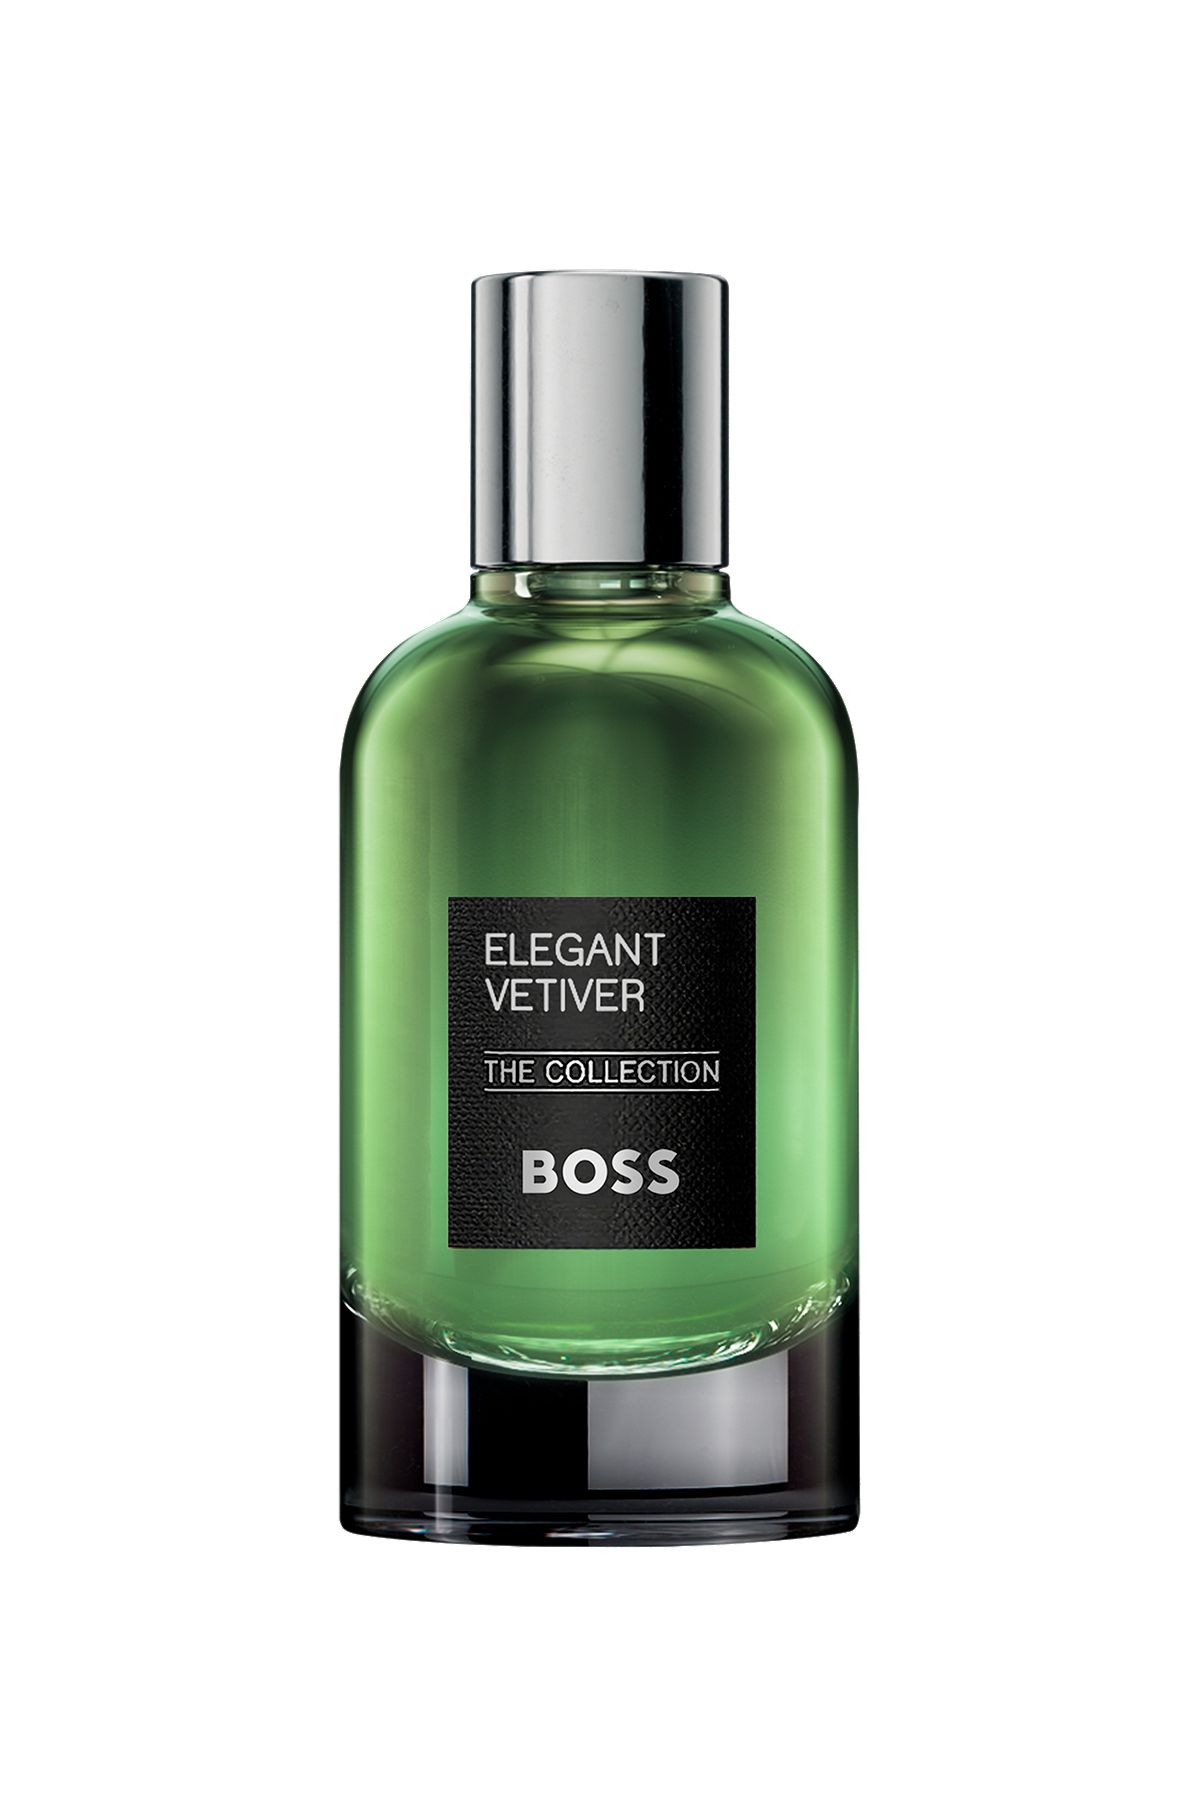 BOSS The Collection Elegant Vetiver Eau de Parfum 100 ml, Assorted-Pre-Pack